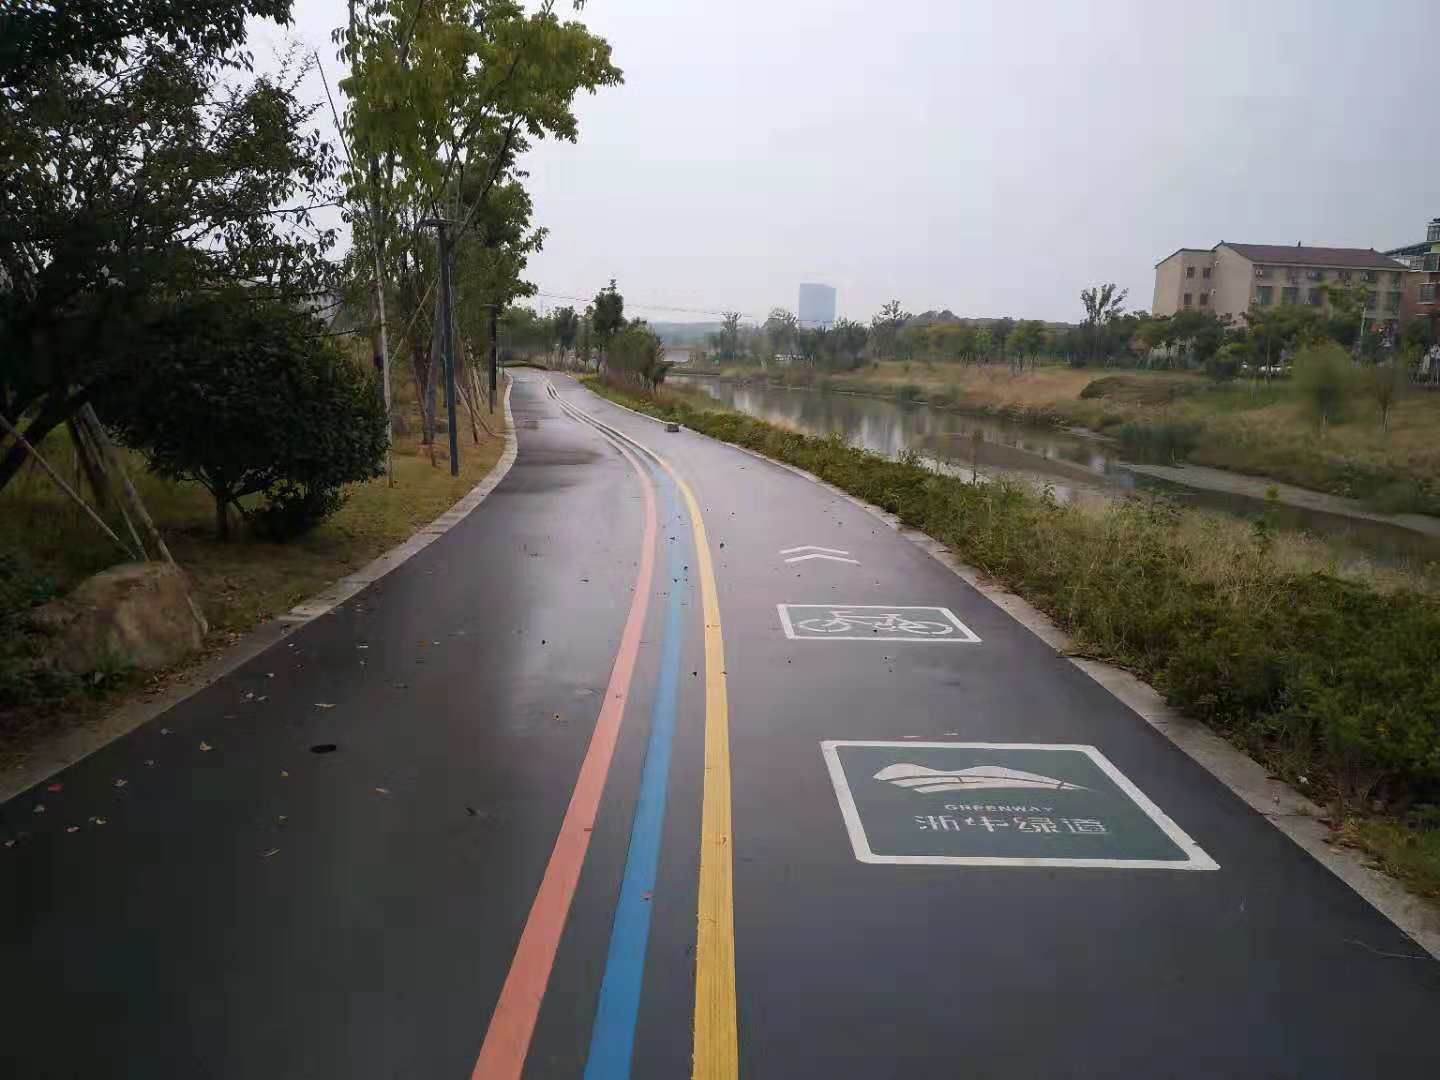 上海明桥交通设施工程有限公司 > 交通标线,热熔标线,冷喷标线,划线